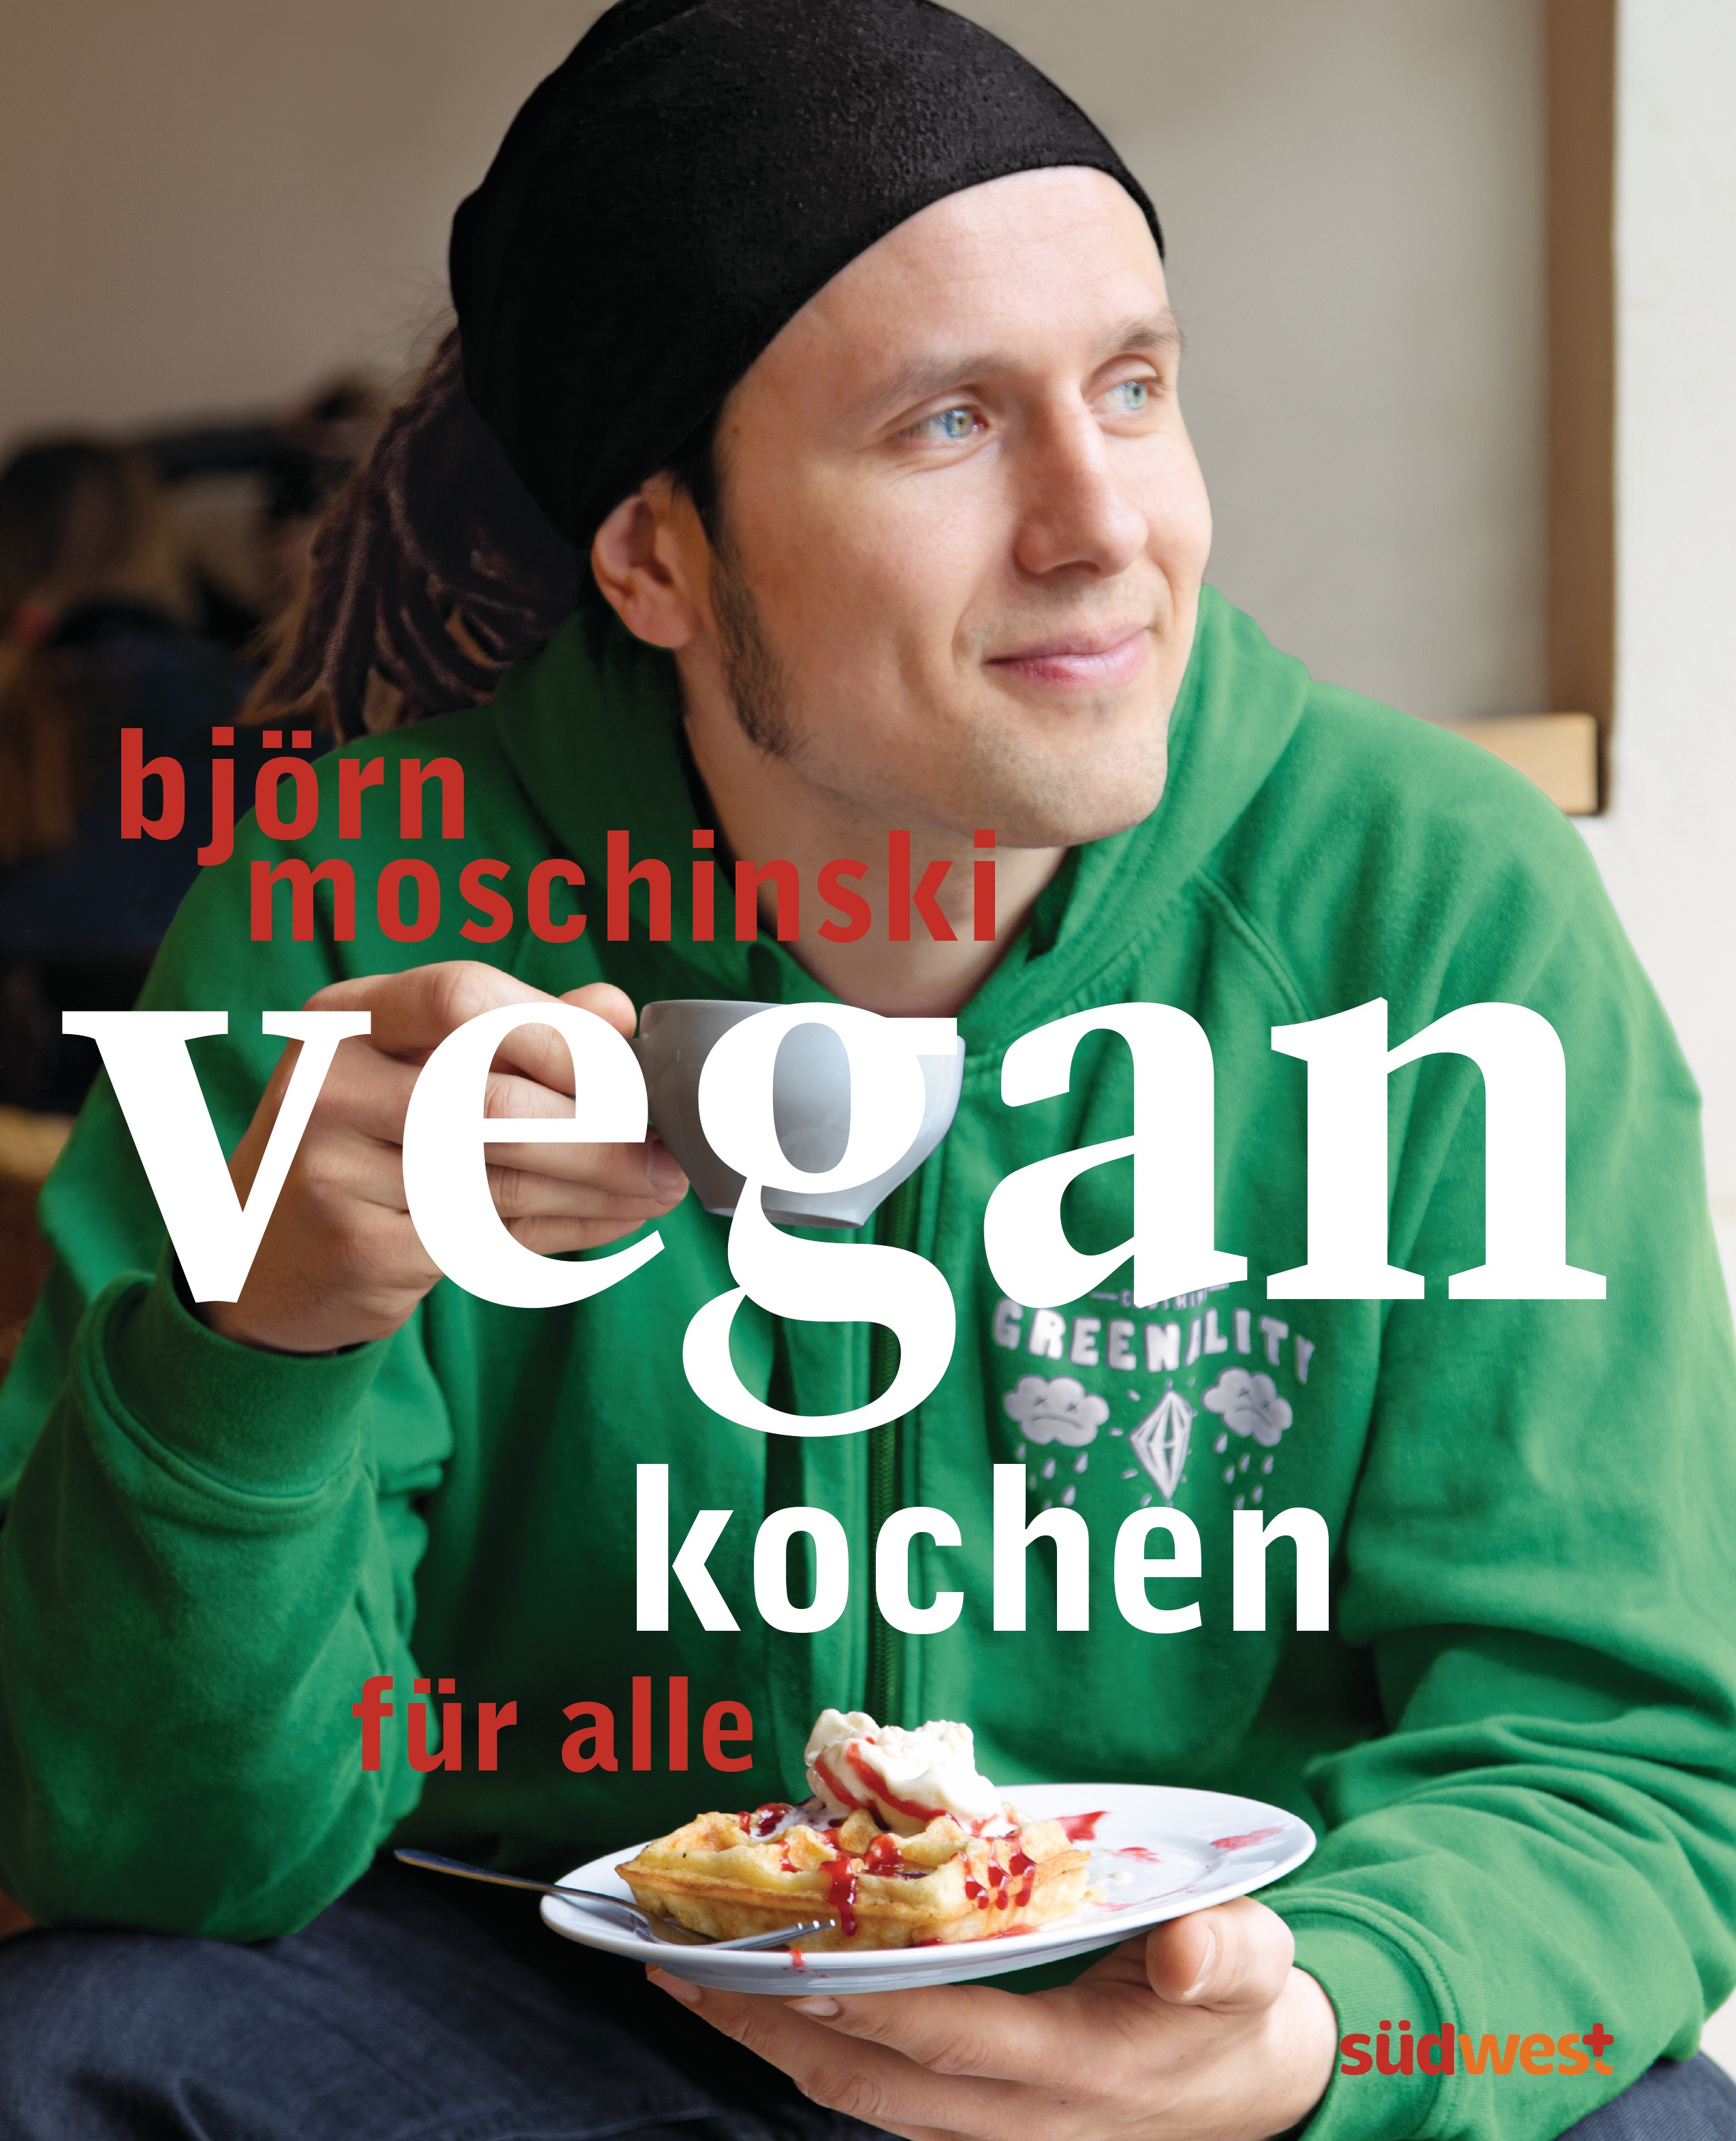 Rezension Kochbuch „vegan kochen für alle“ von Björn Moschinski mit Rezept